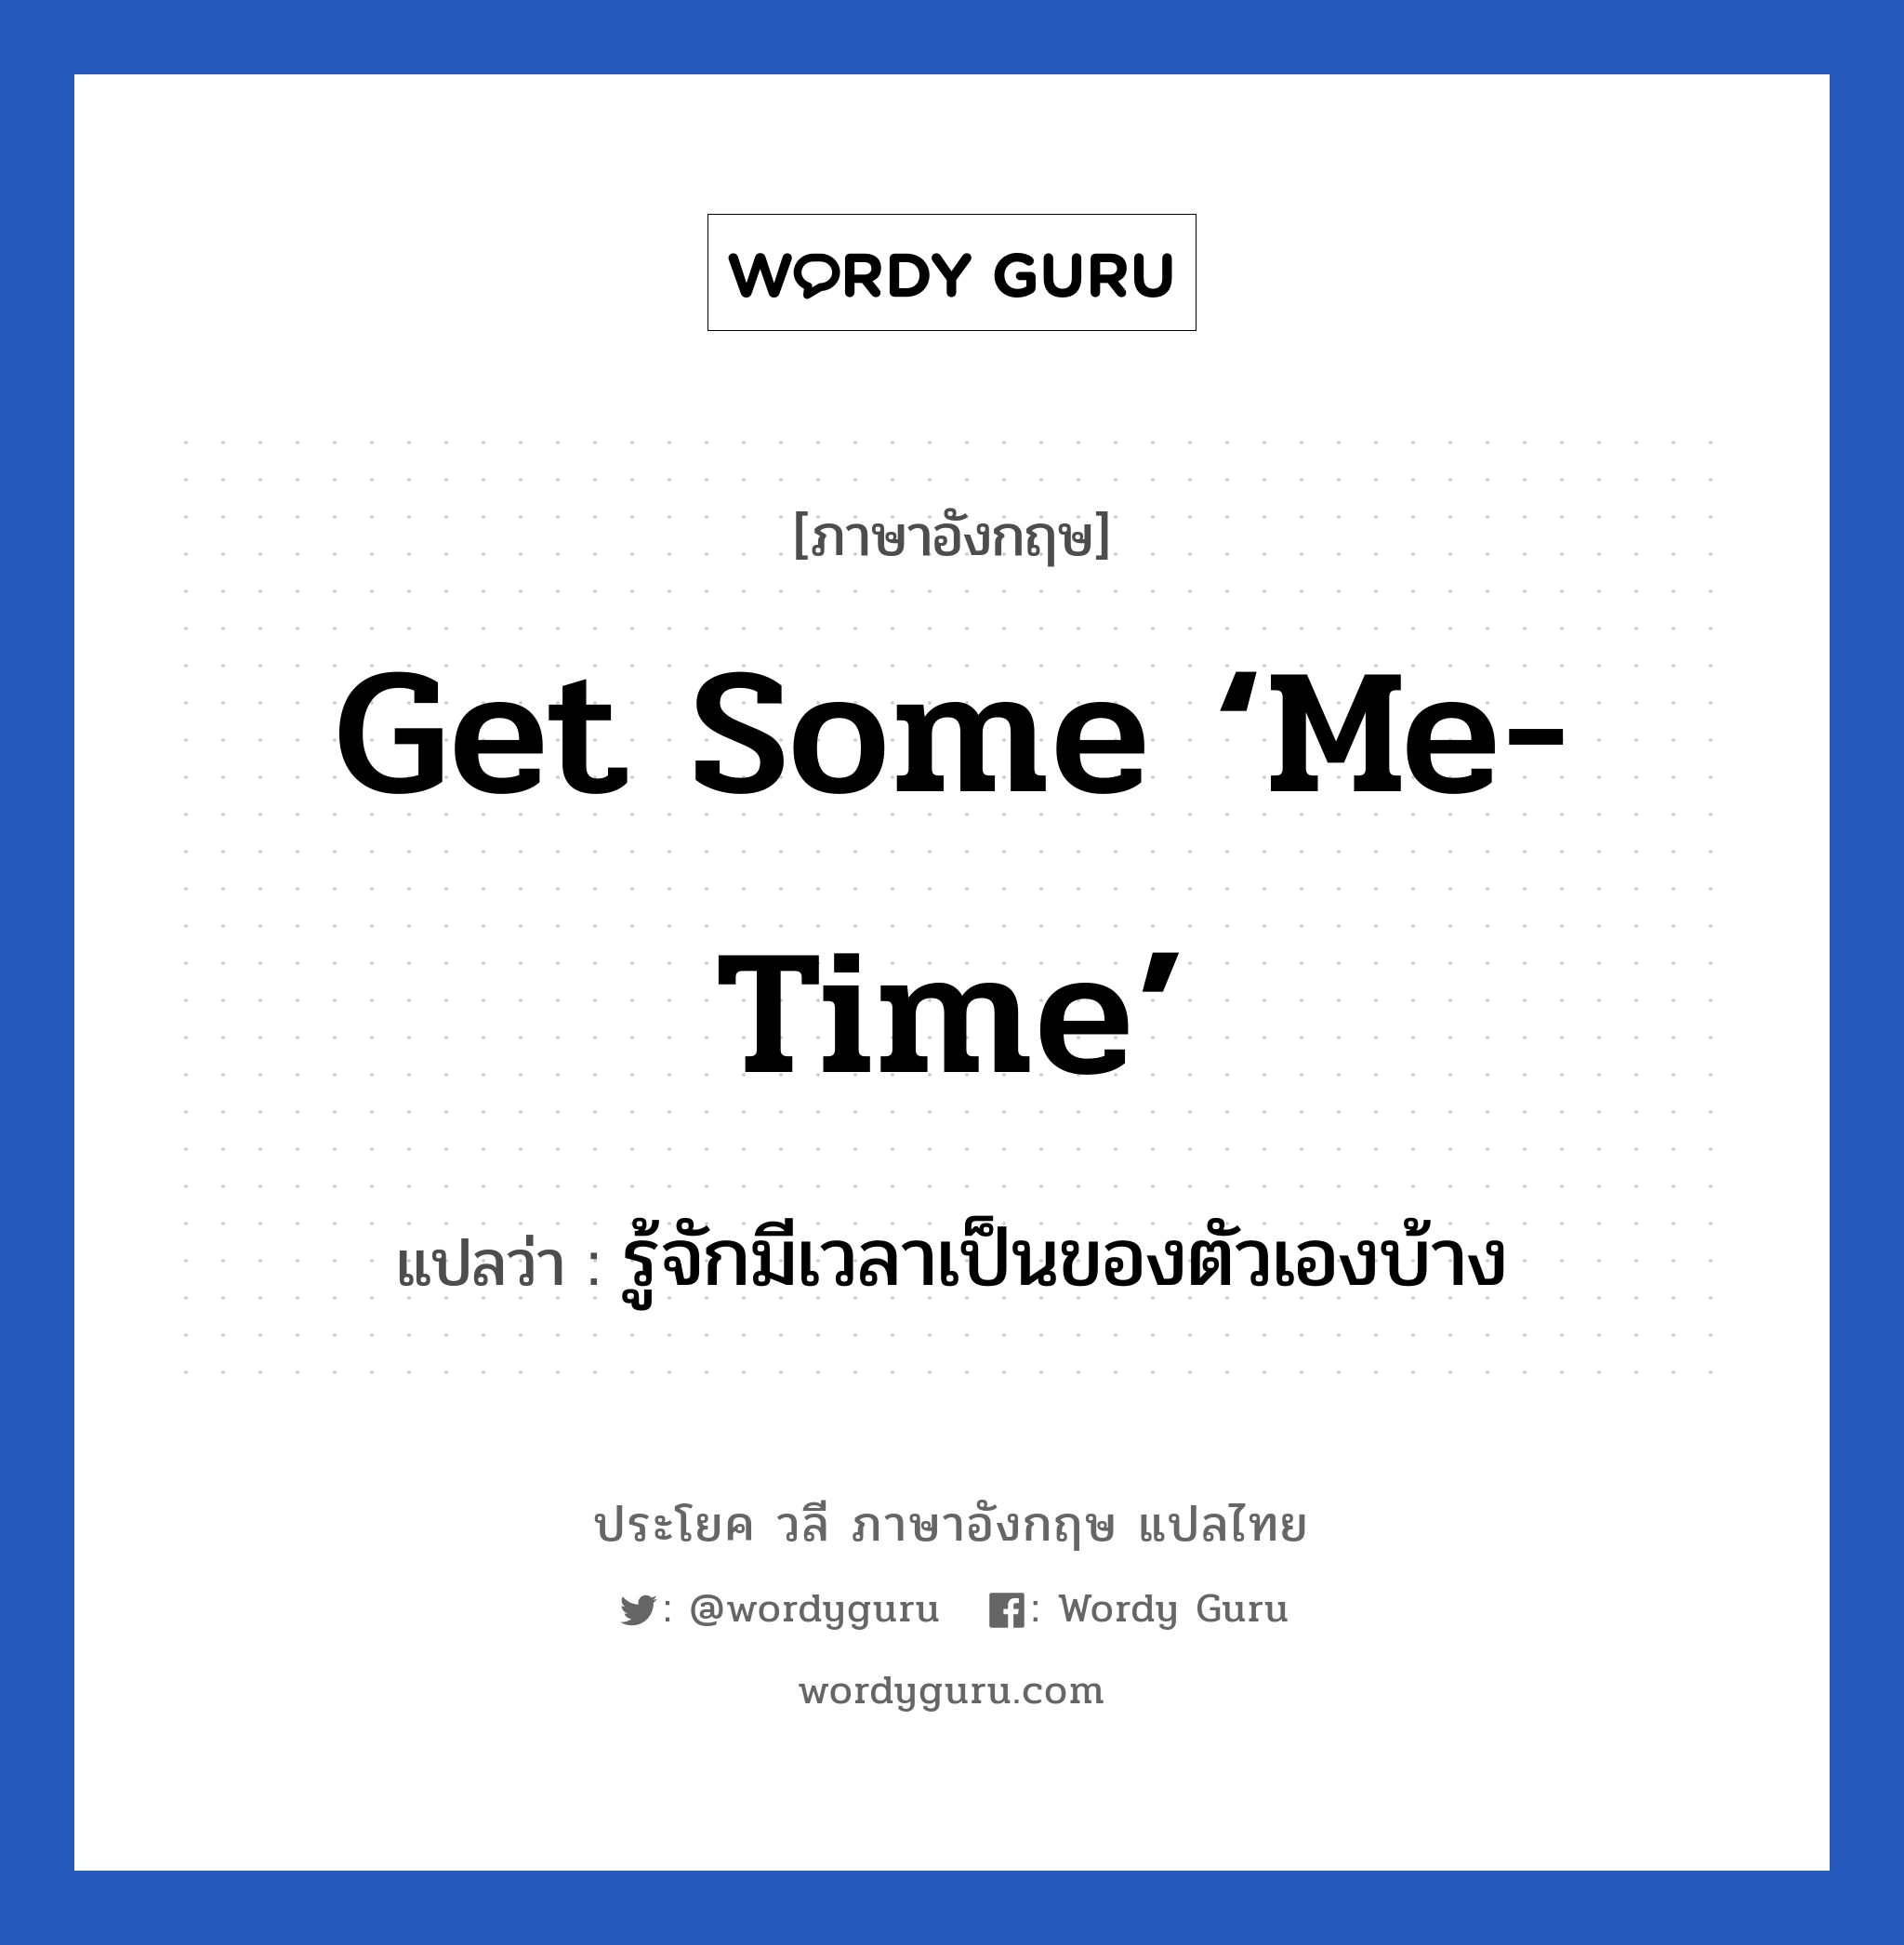 Get some ‘me-time’ แปลว่า? เป็นประโยคในกลุ่มประเภท เป็นห่วง, วลีภาษาอังกฤษ Get some ‘me-time’ แปลว่า รู้จักมีเวลาเป็นของตัวเองบ้าง หมวด เป็นห่วง